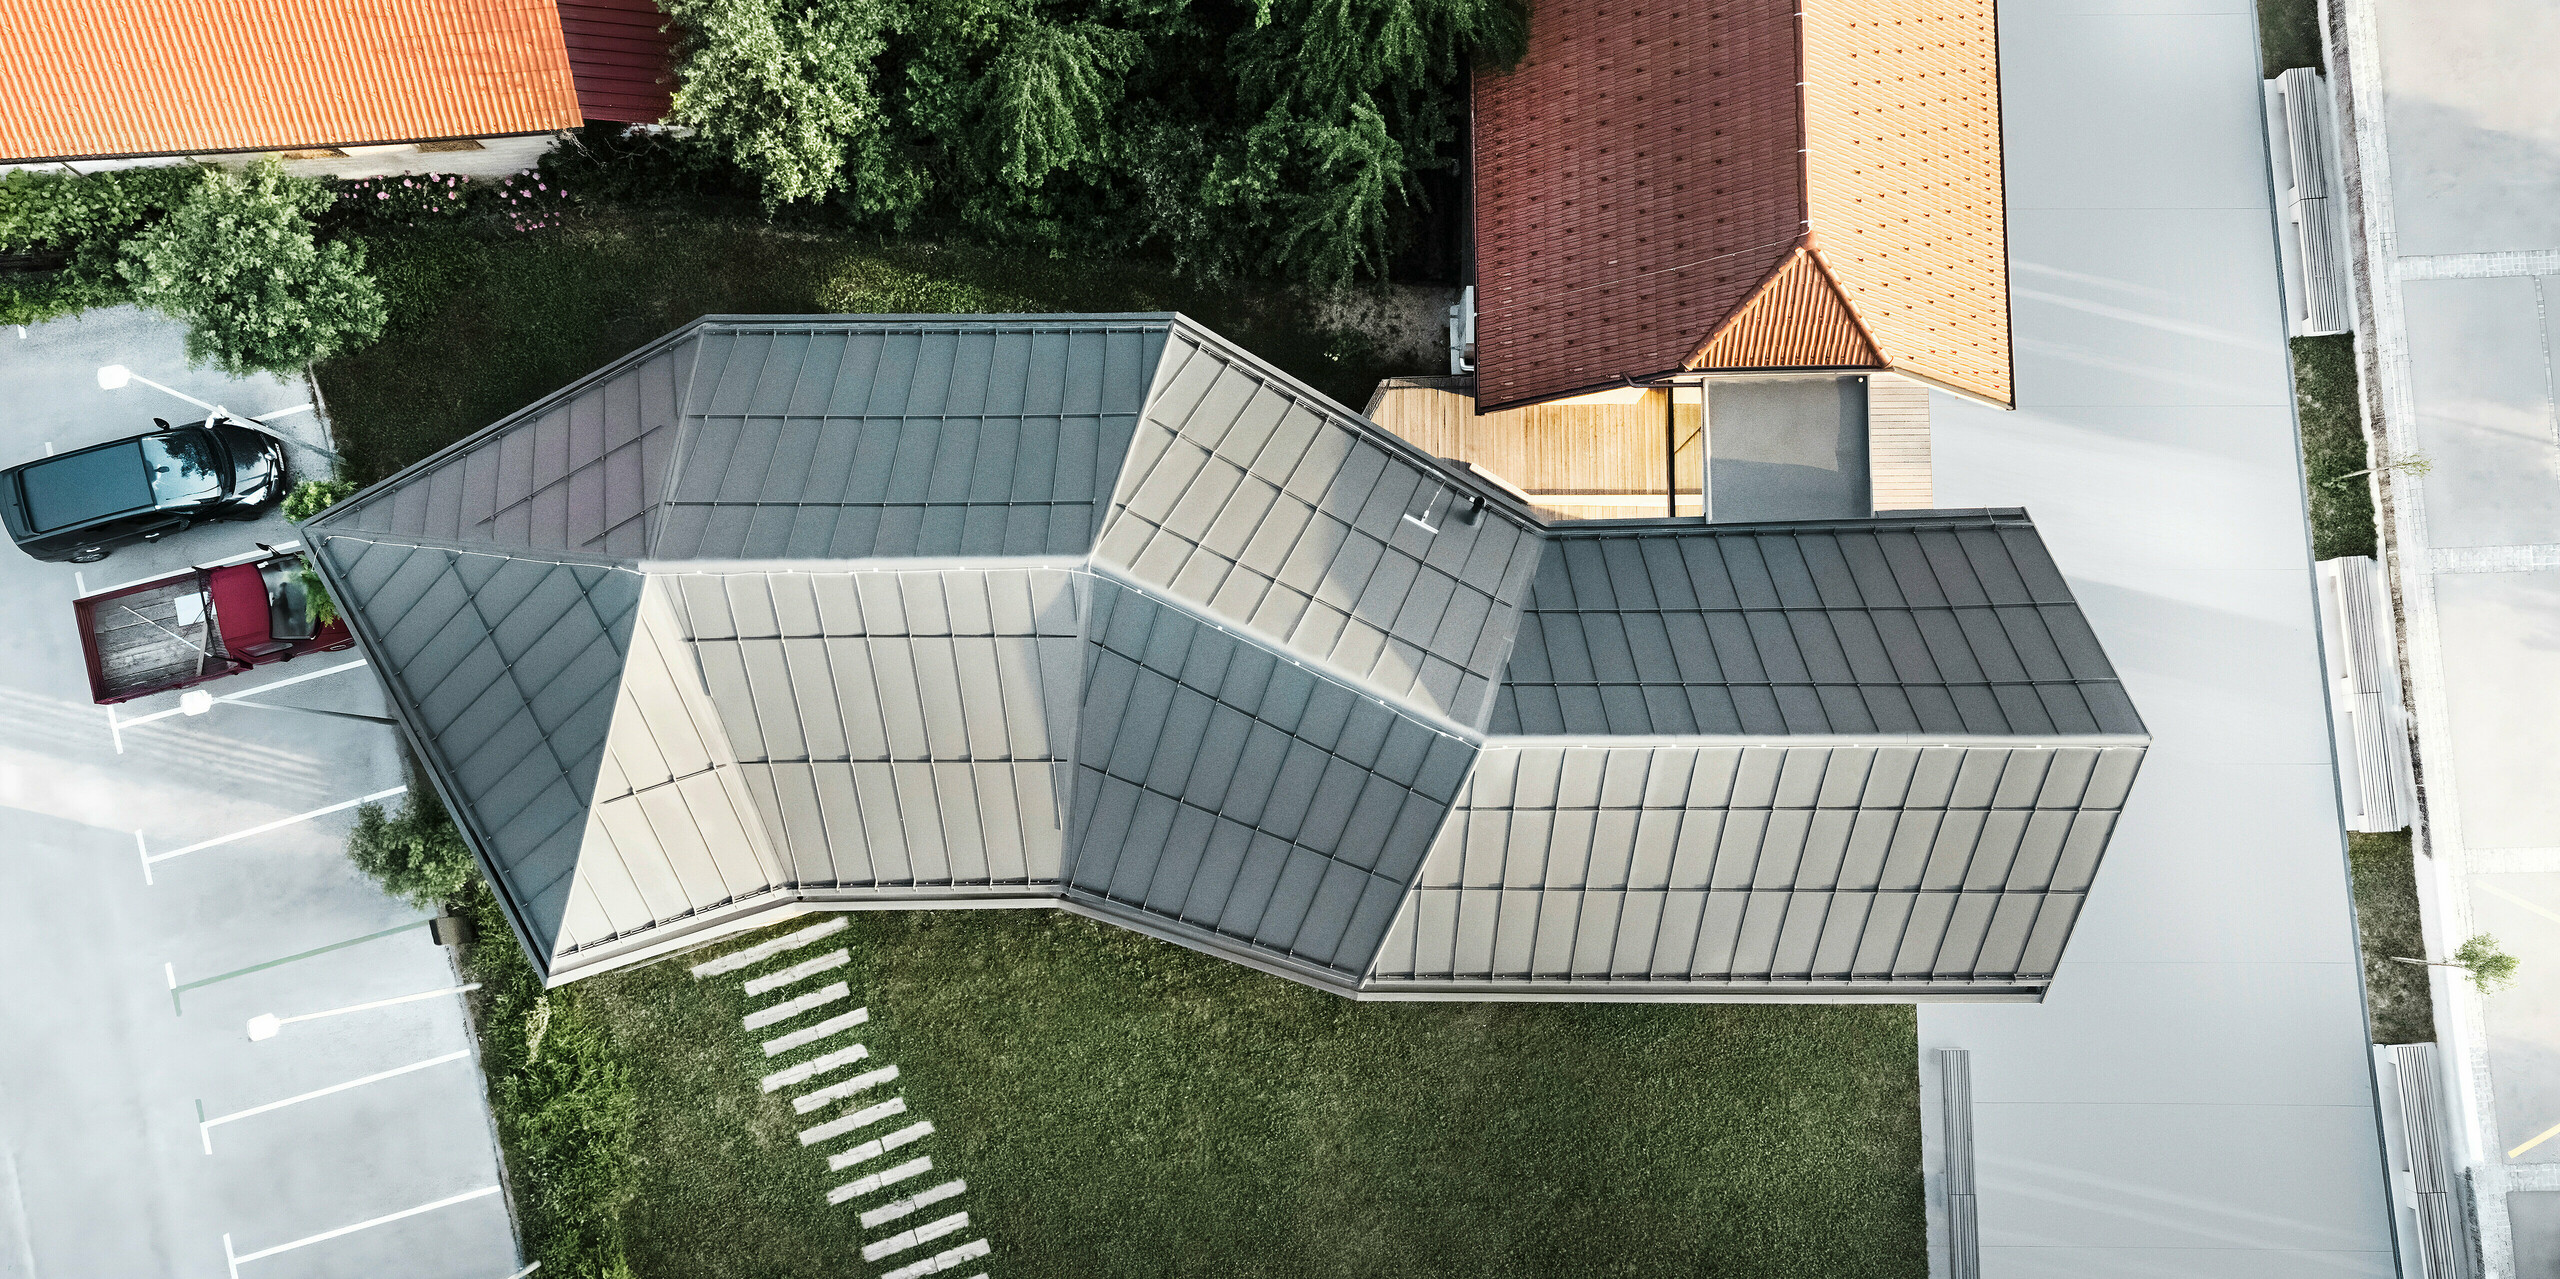 Pogled iz ptičje perspektive na turistično informacijski center za obiskovalce na Igu v Sloveniji, ki navdušuje s kompleksno geometrijsko streho s sistemom PREFALZ v P.10 temno sivi barvi. Izstopajoča strešna konstrukcija odraža inovativno arhitekturo in prilagajanje raznoliki okolici s sosednjimi tradicionalnimi strehami iz strešnikov. Natančna izdelava in sodoben dizajn poudarjata strokovno znanje PREFA na področju  sodobnega oblikovanja streh.